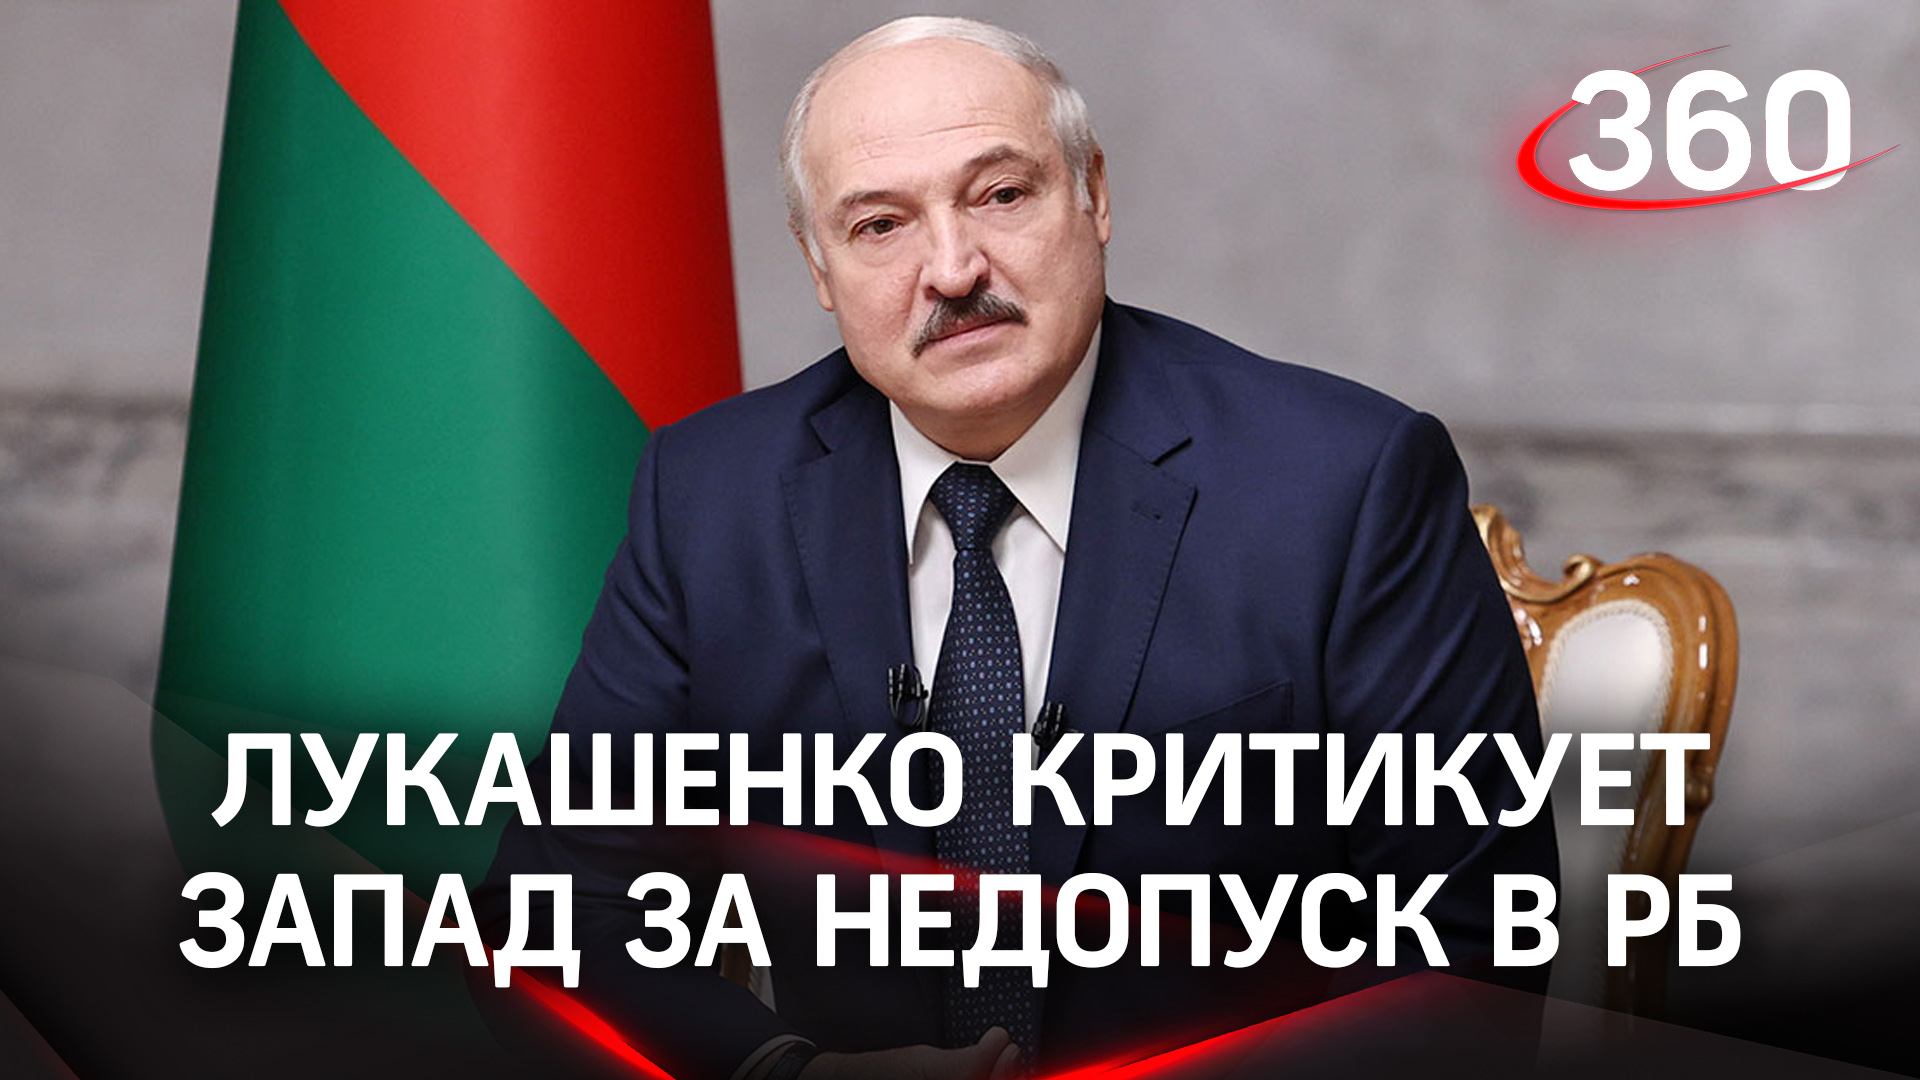 «Есть порядок при диктатуре - ходили бы голытьбой!» Лукашенко критикует Запад - за недопуск в РБ